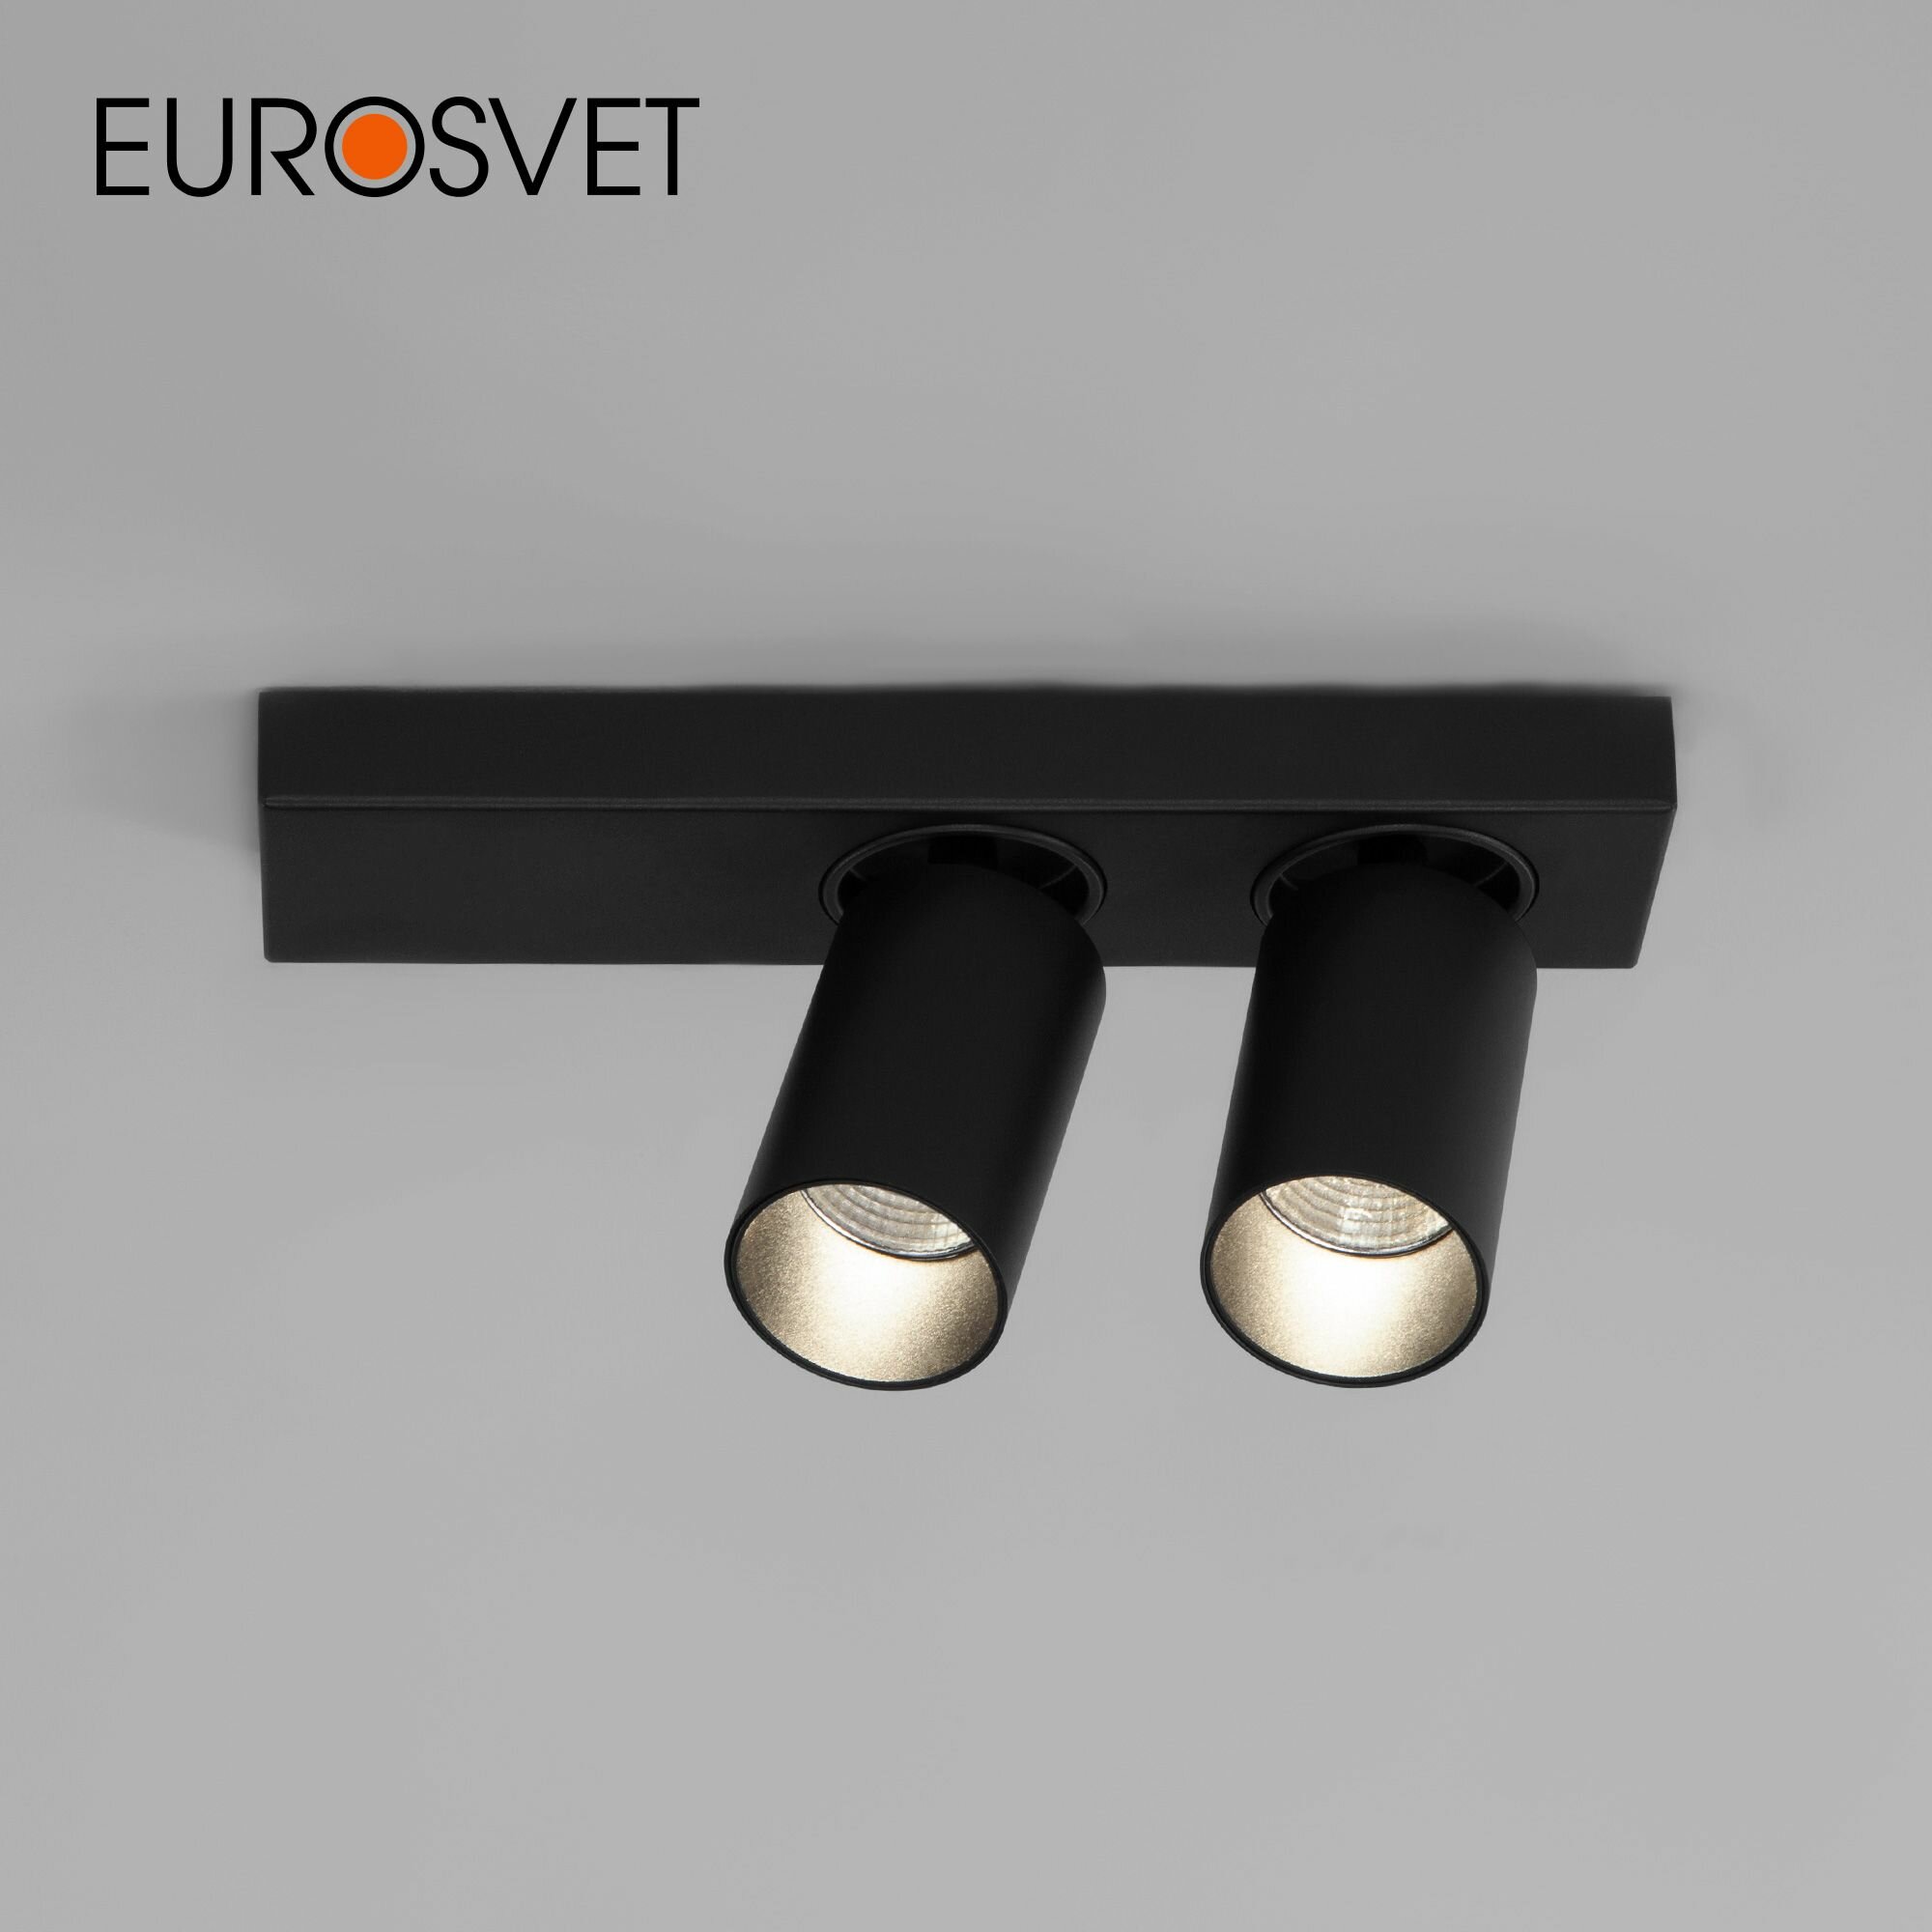 Спот / Накладной светодиодный светильник с поворотными плафонами Eurosvet 20139/2 LED, 10 Вт, 4200 К, цвет черный